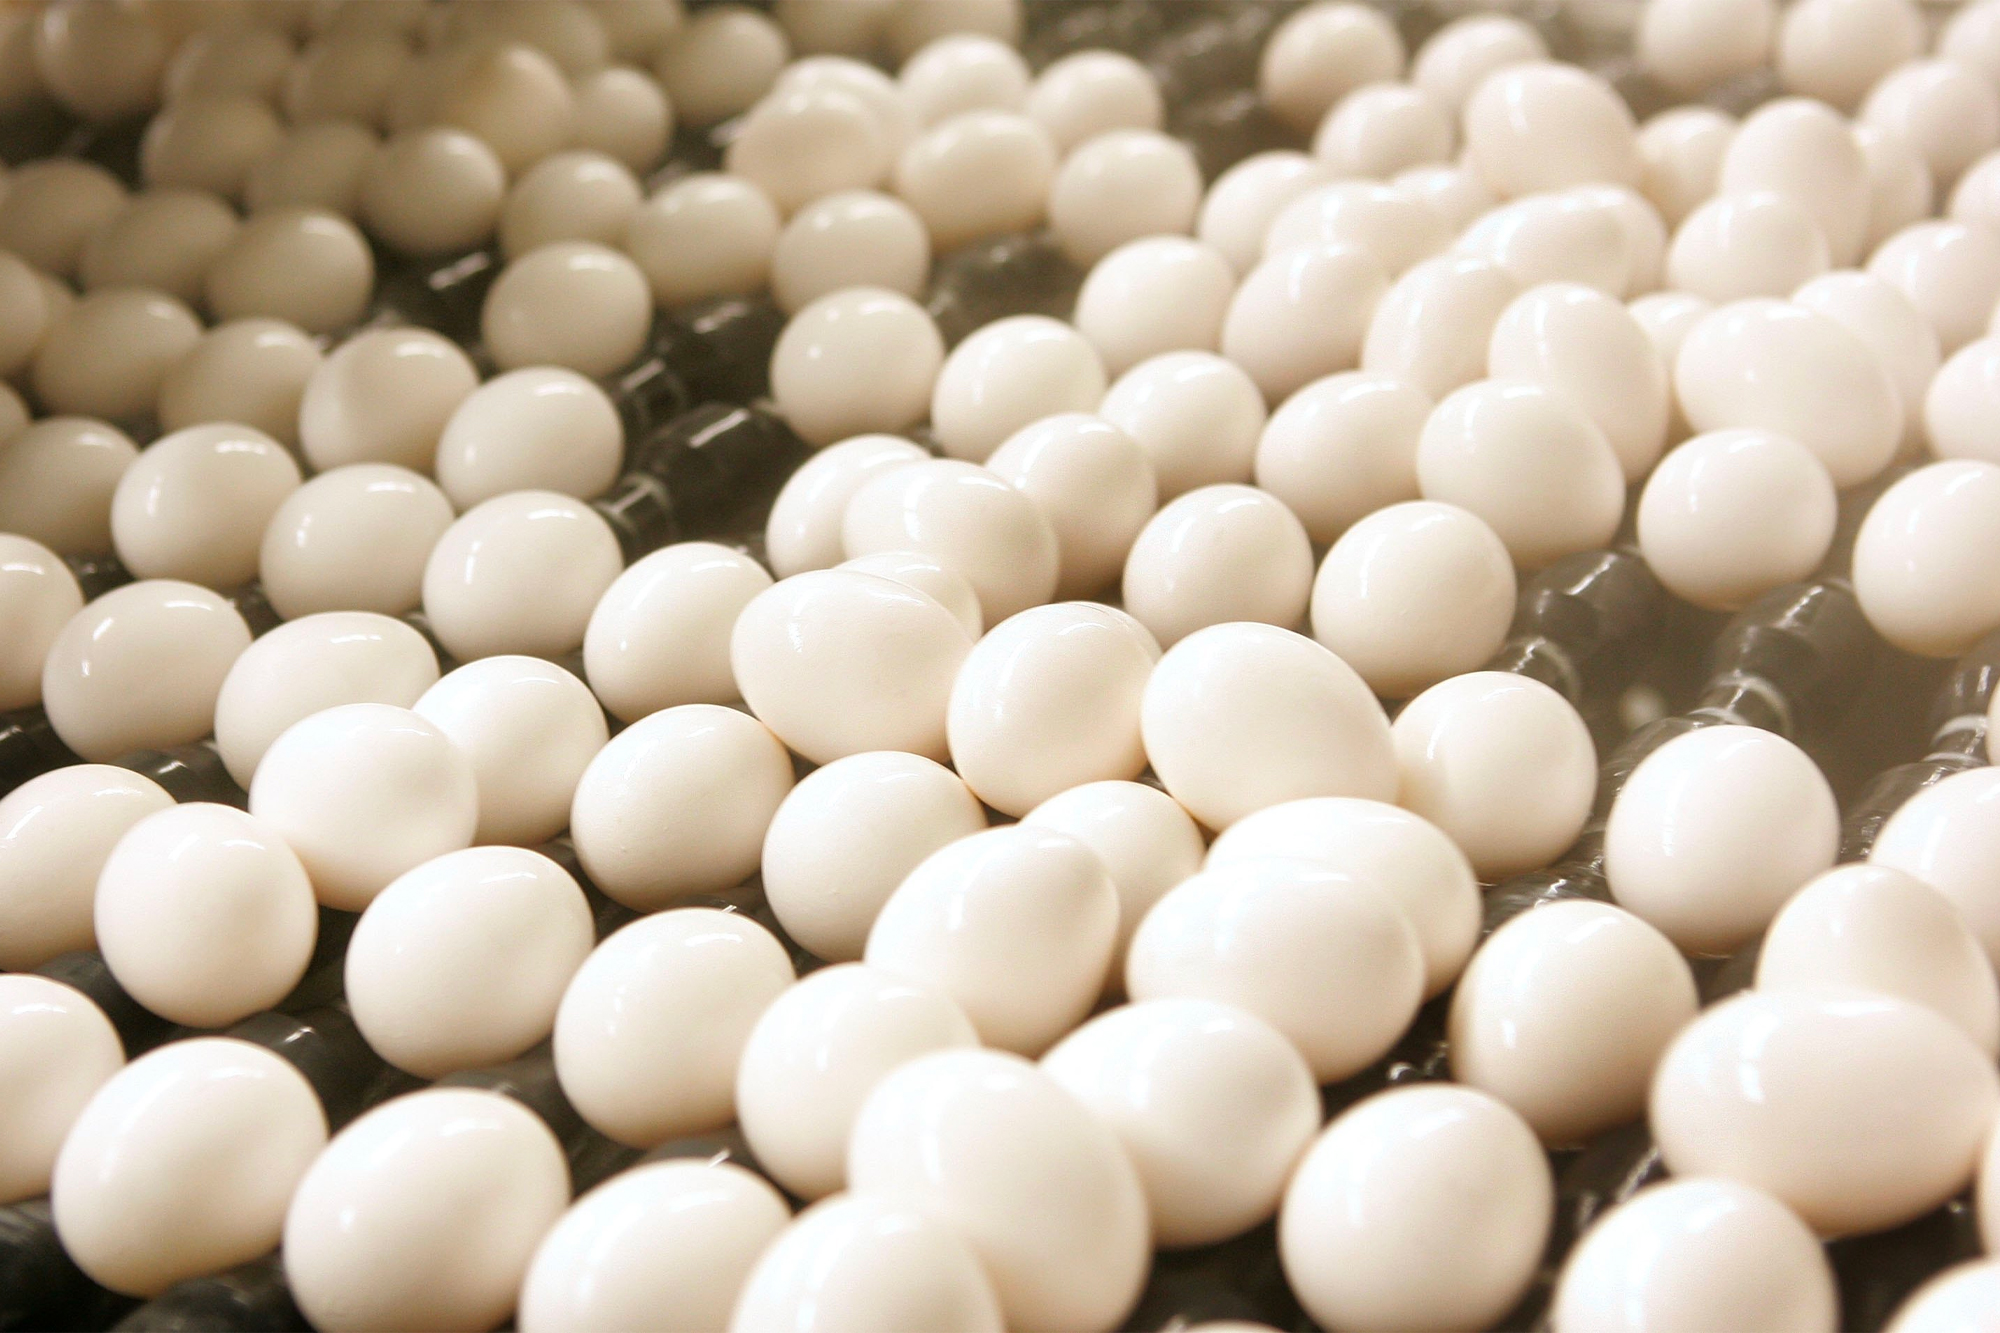 Trứng thanh trùng được chuyển đến khu vực đóng gói tại cơ sở chế biến Trứng thanh trùng quốc gia (NPE) vào ngày 22/03/2006, tại Lansing, Illinois. (Ảnh: Scott Olson/Getty)